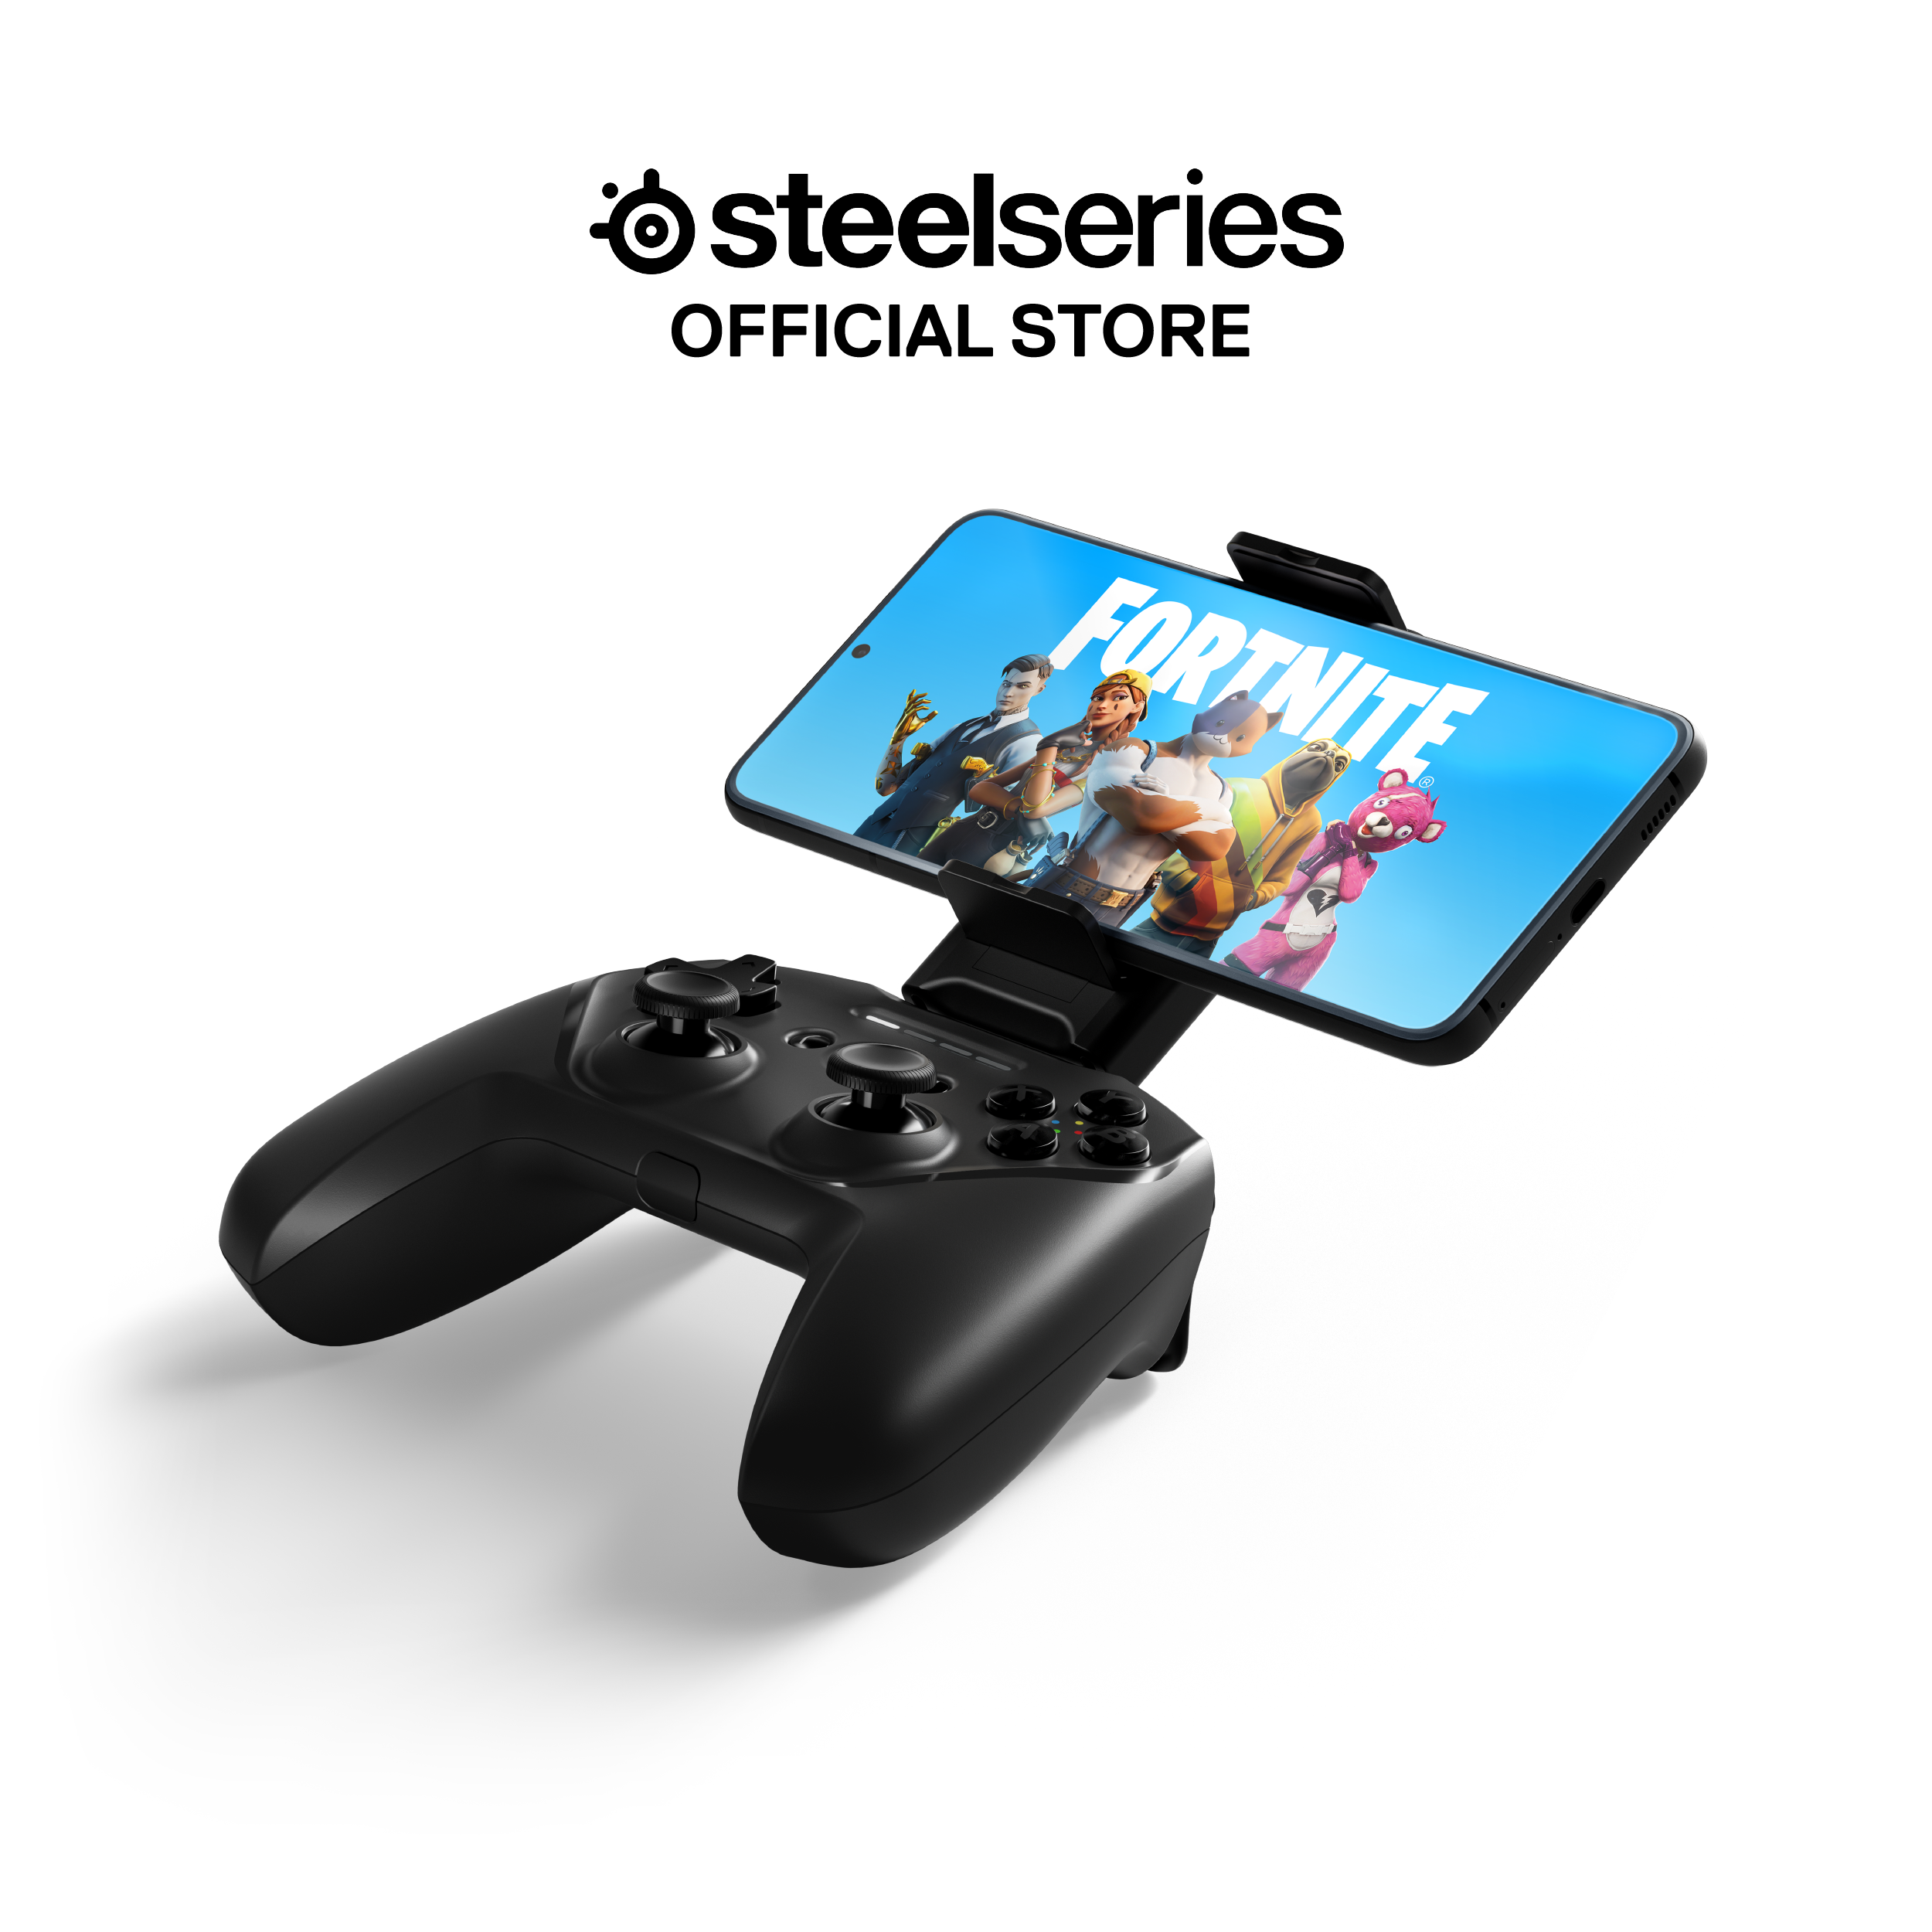 Tay cầm chơi game không dây SteelSeries Nimbus+ màu đen, pin đến 50H, dành cho các thiết bị Apple, Hàng chính hãng, bảo hành 1 năm